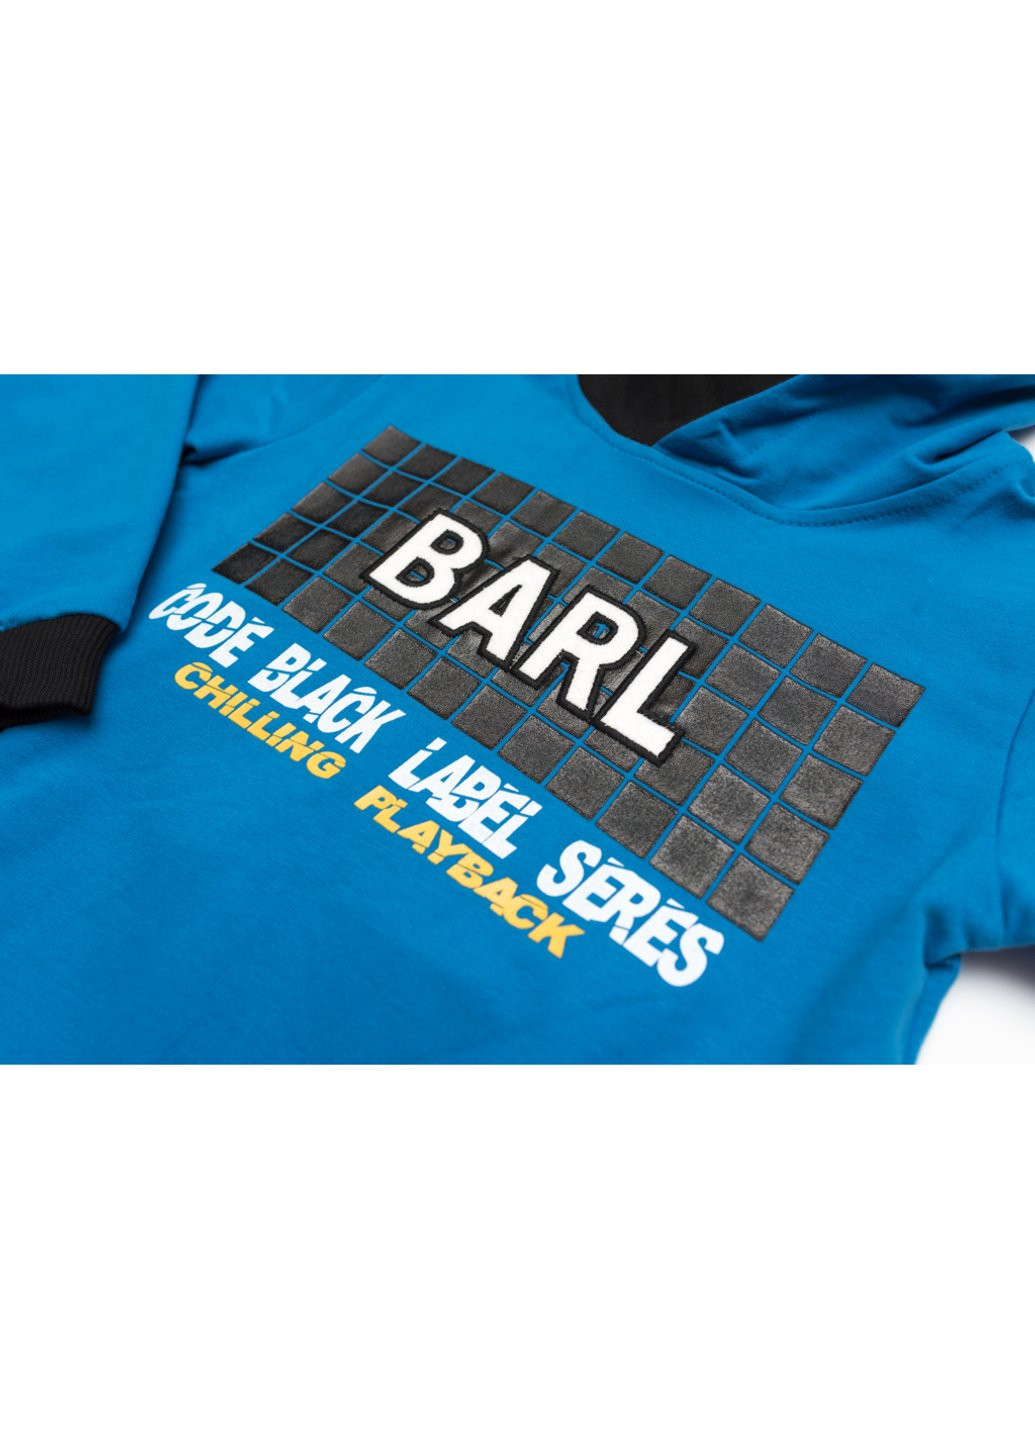 Спортивный костюм "BARL" (13280-152B-blue) Breeze (257208666)